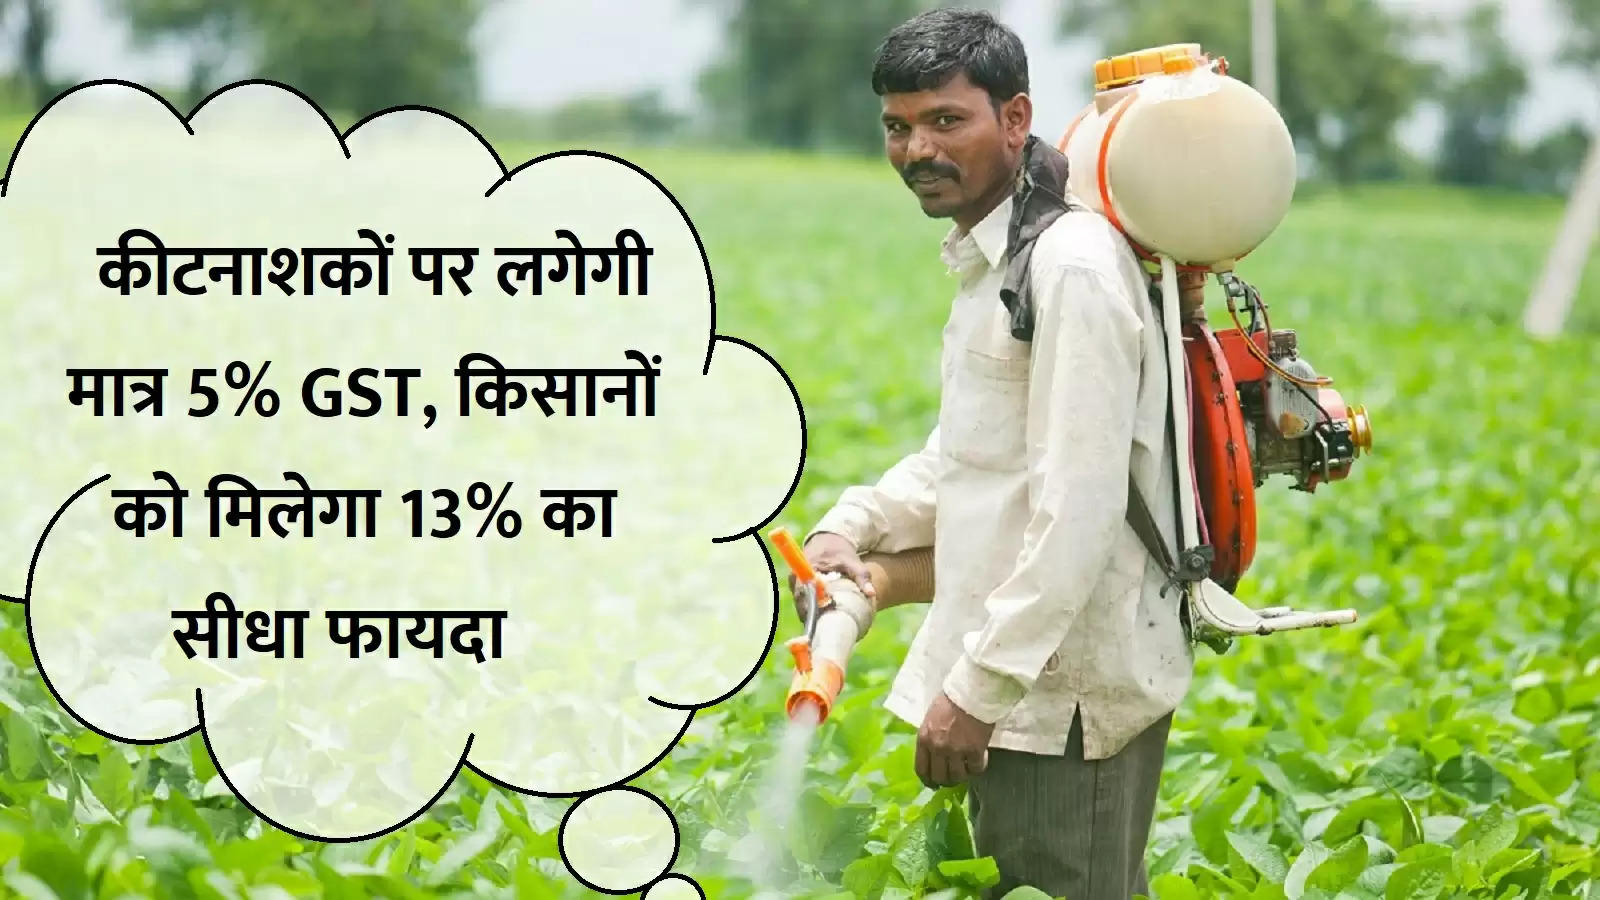 किसानों को मिलेगा 13% का सीधा फायदा, कीटनाशकों पर लगेगी मात्र 5% GST, जानें पूरी डिटेल्स